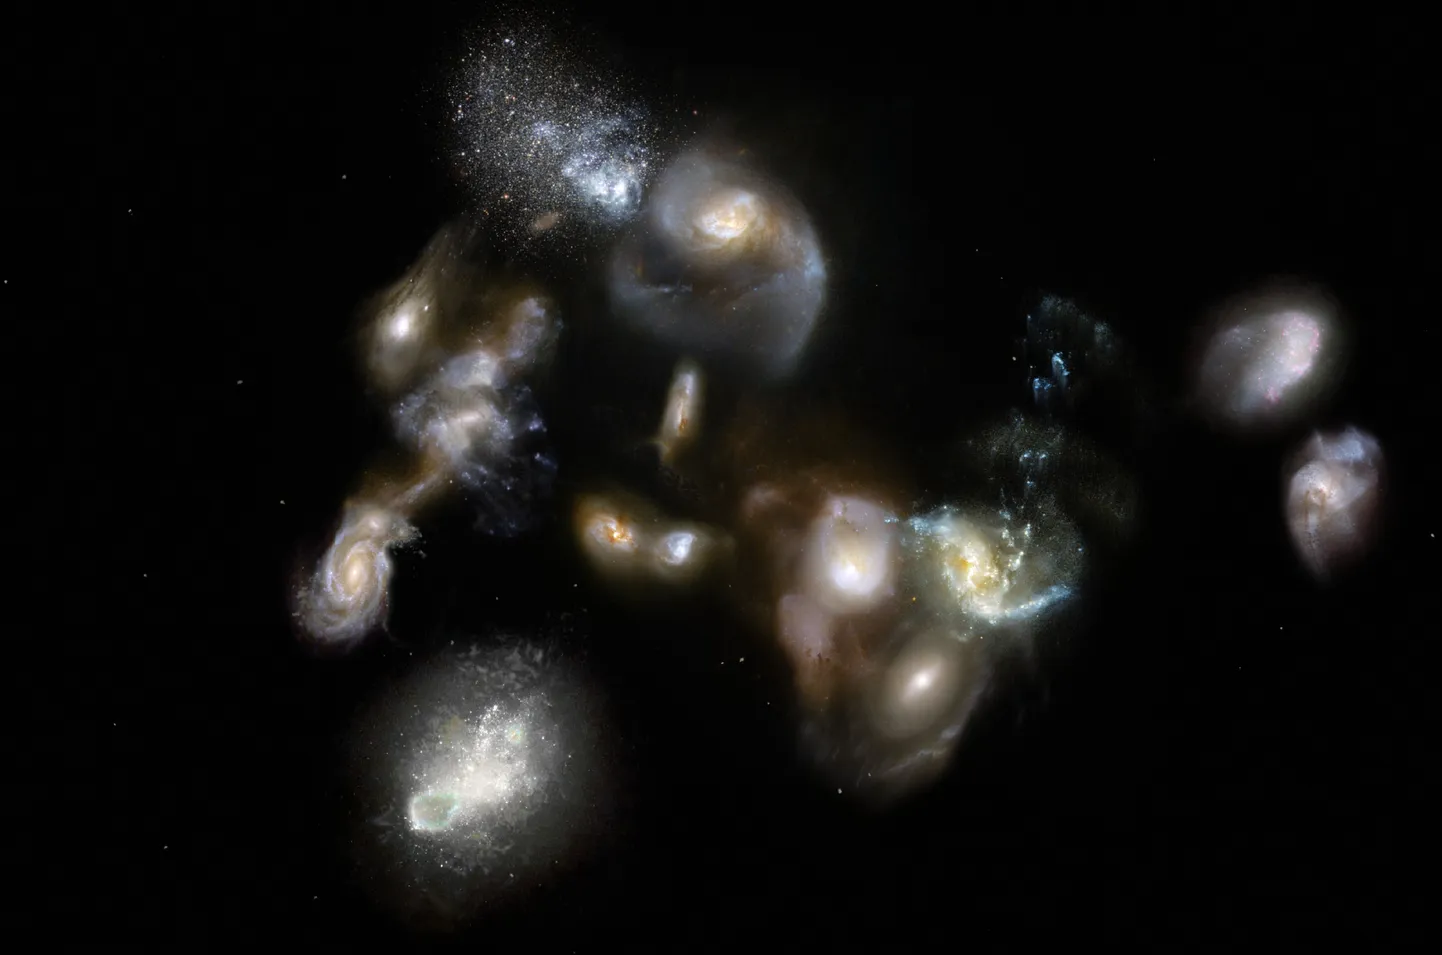 Kunstniku nägemus muistsest kaugest galaktikaparvest SPT2349-56. 14 galaktikat, mis siin koonduvad, võivad edasiste vaatluste põhjal lisa saada